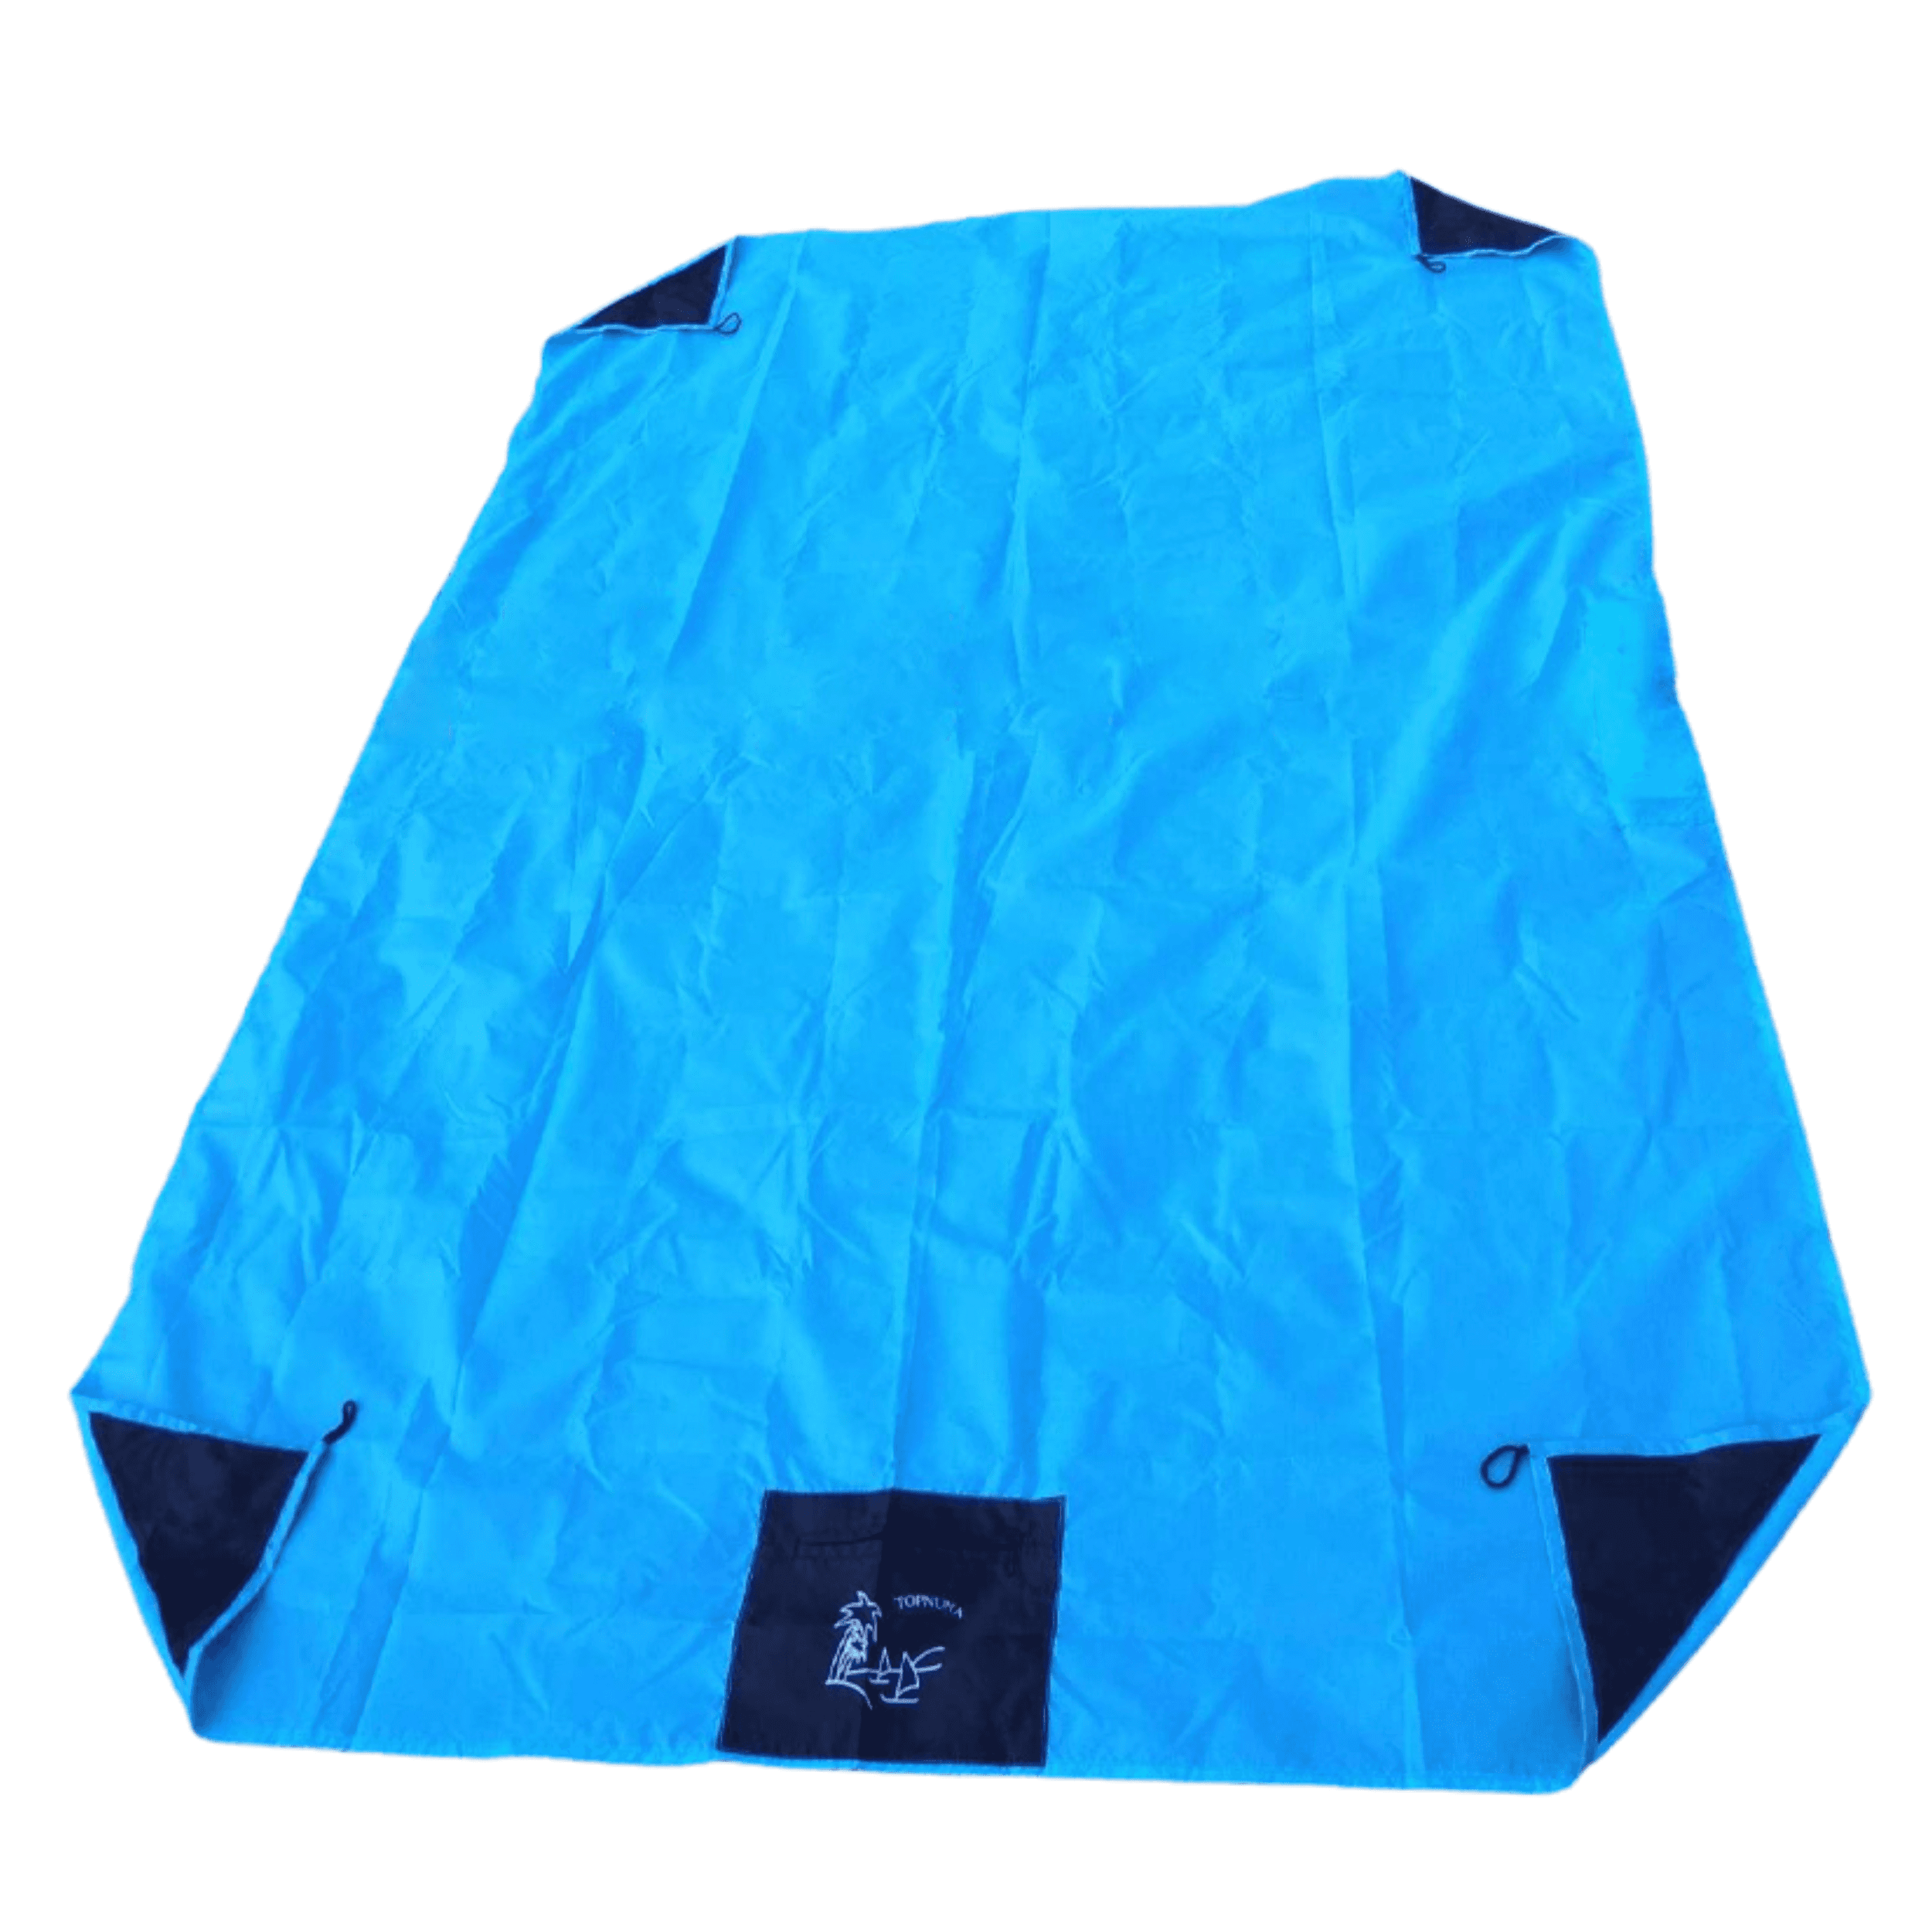 Wodoodporny koc piknikowy z płaszczem przeciwdeszczowym - niebieski